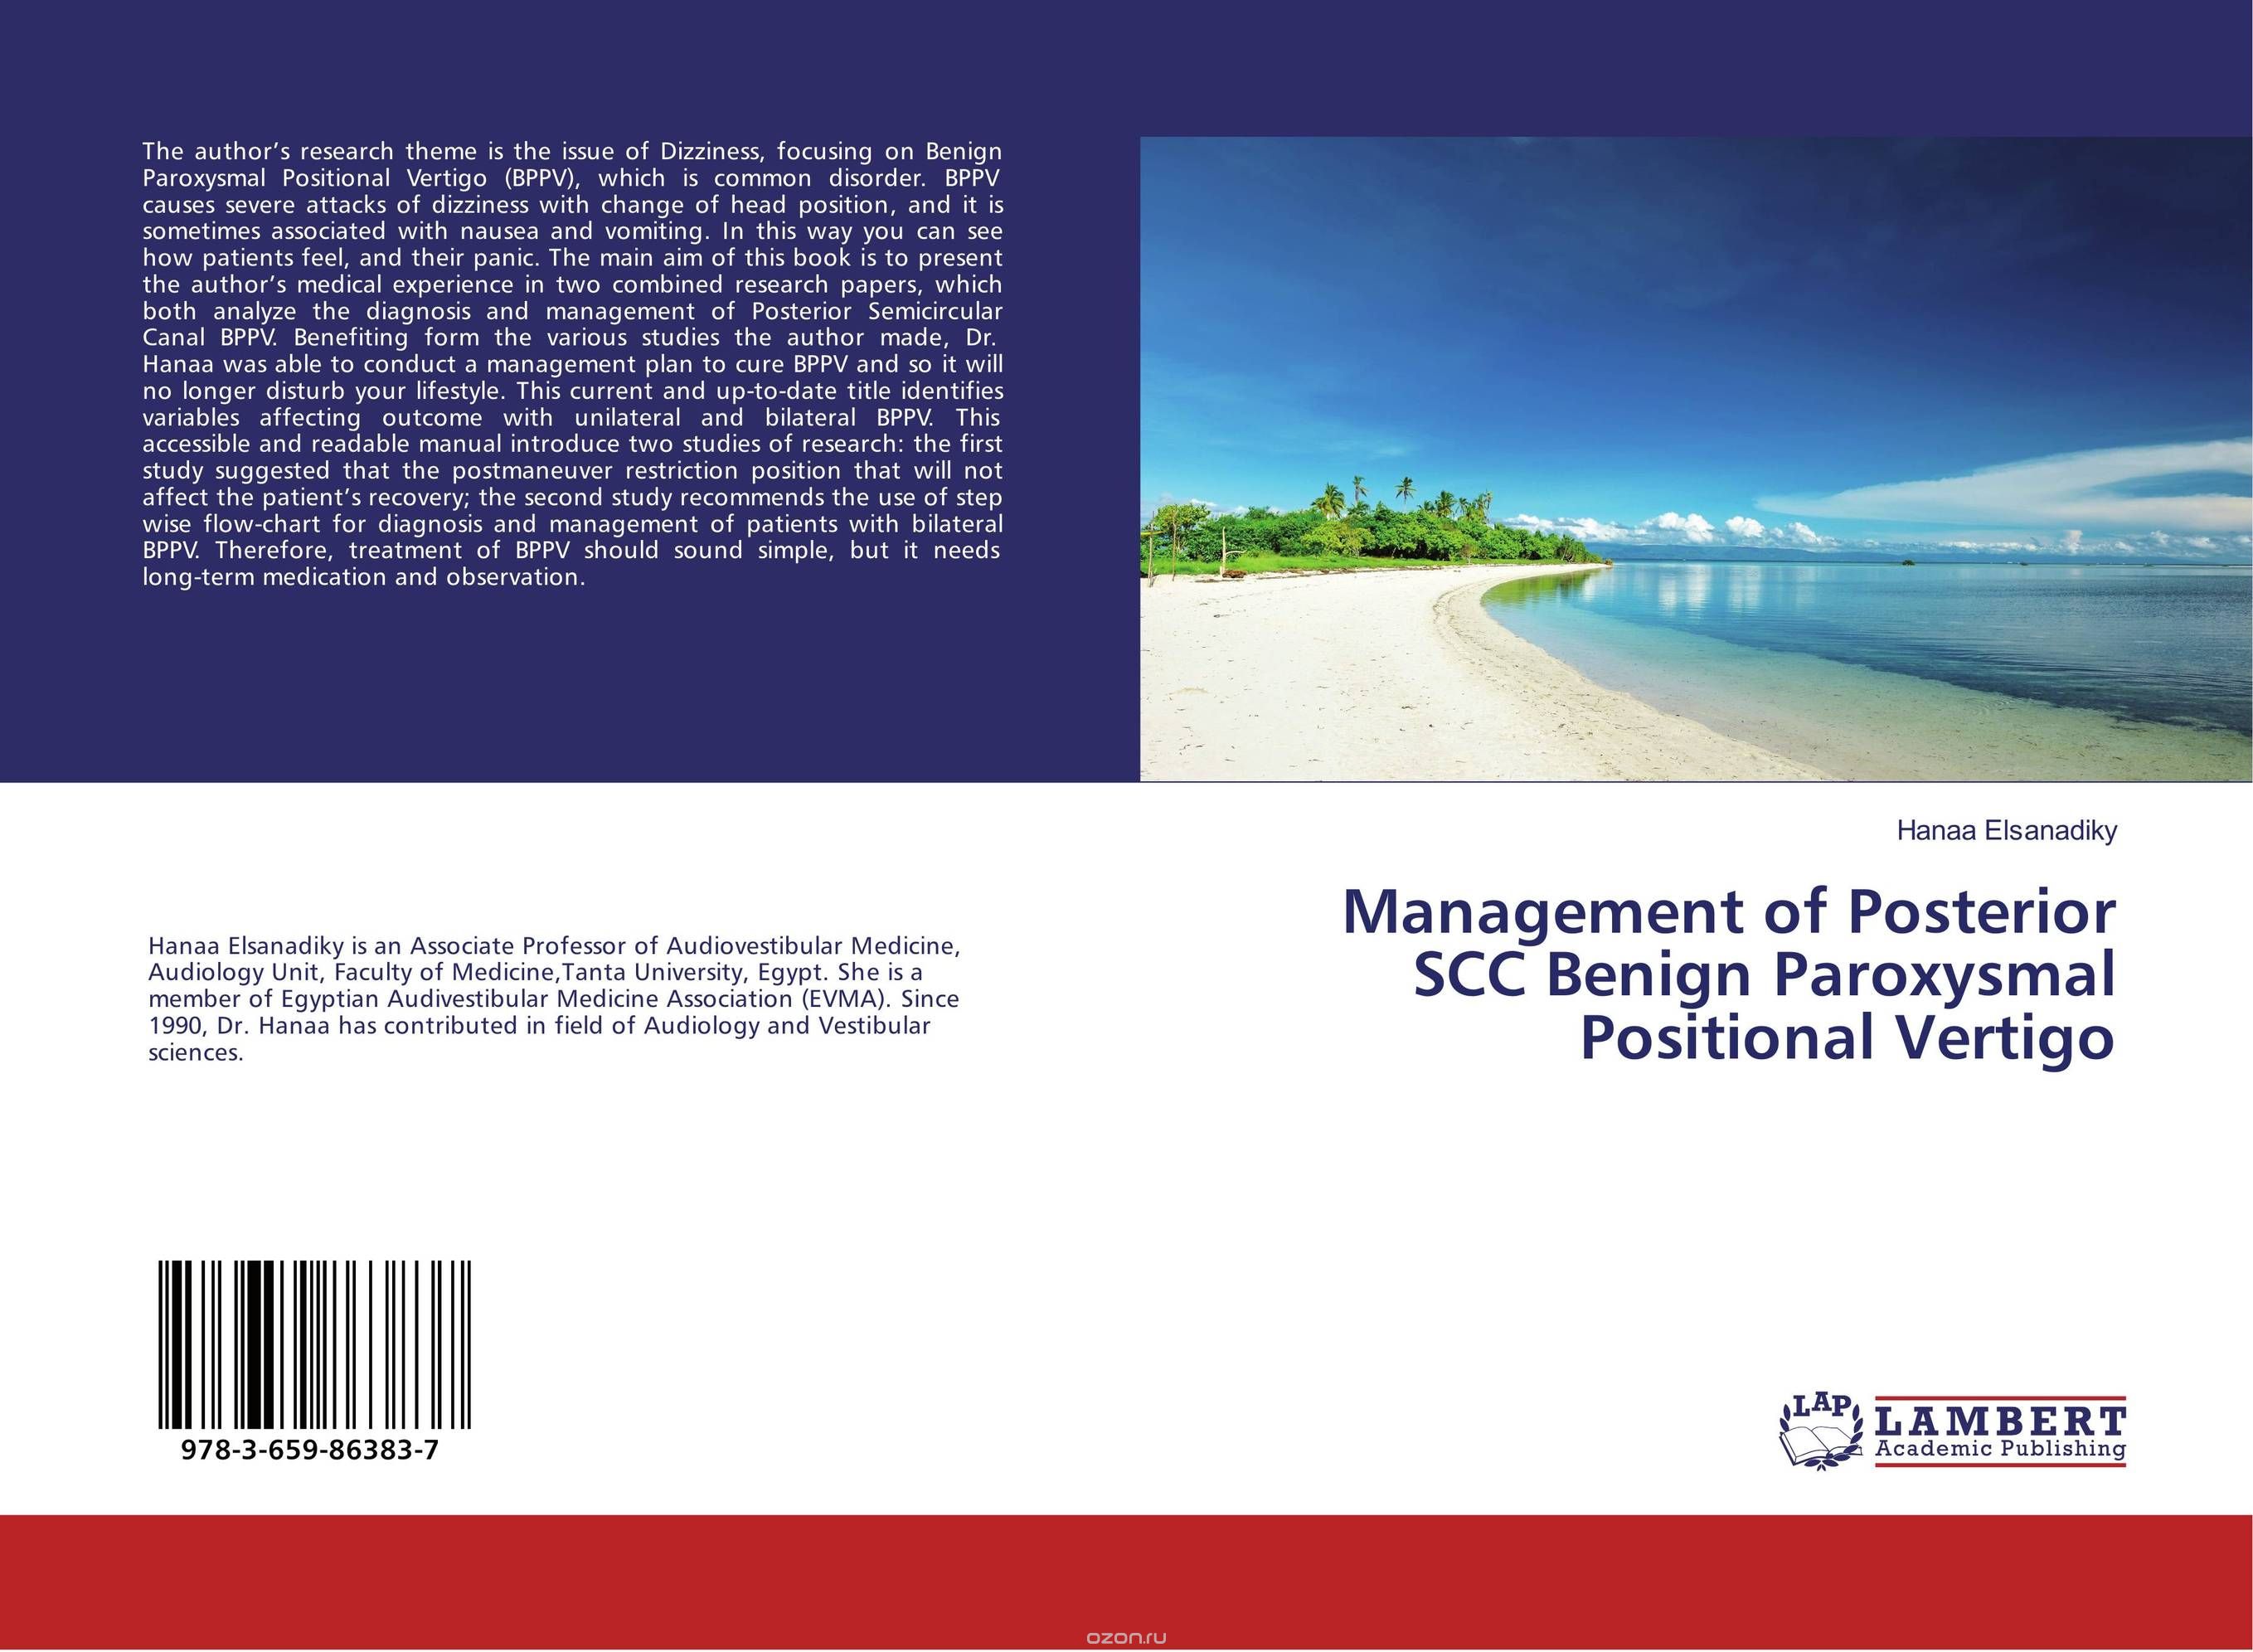 Скачать книгу "Management of Posterior SCC Benign Paroxysmal Positional Vertigo"